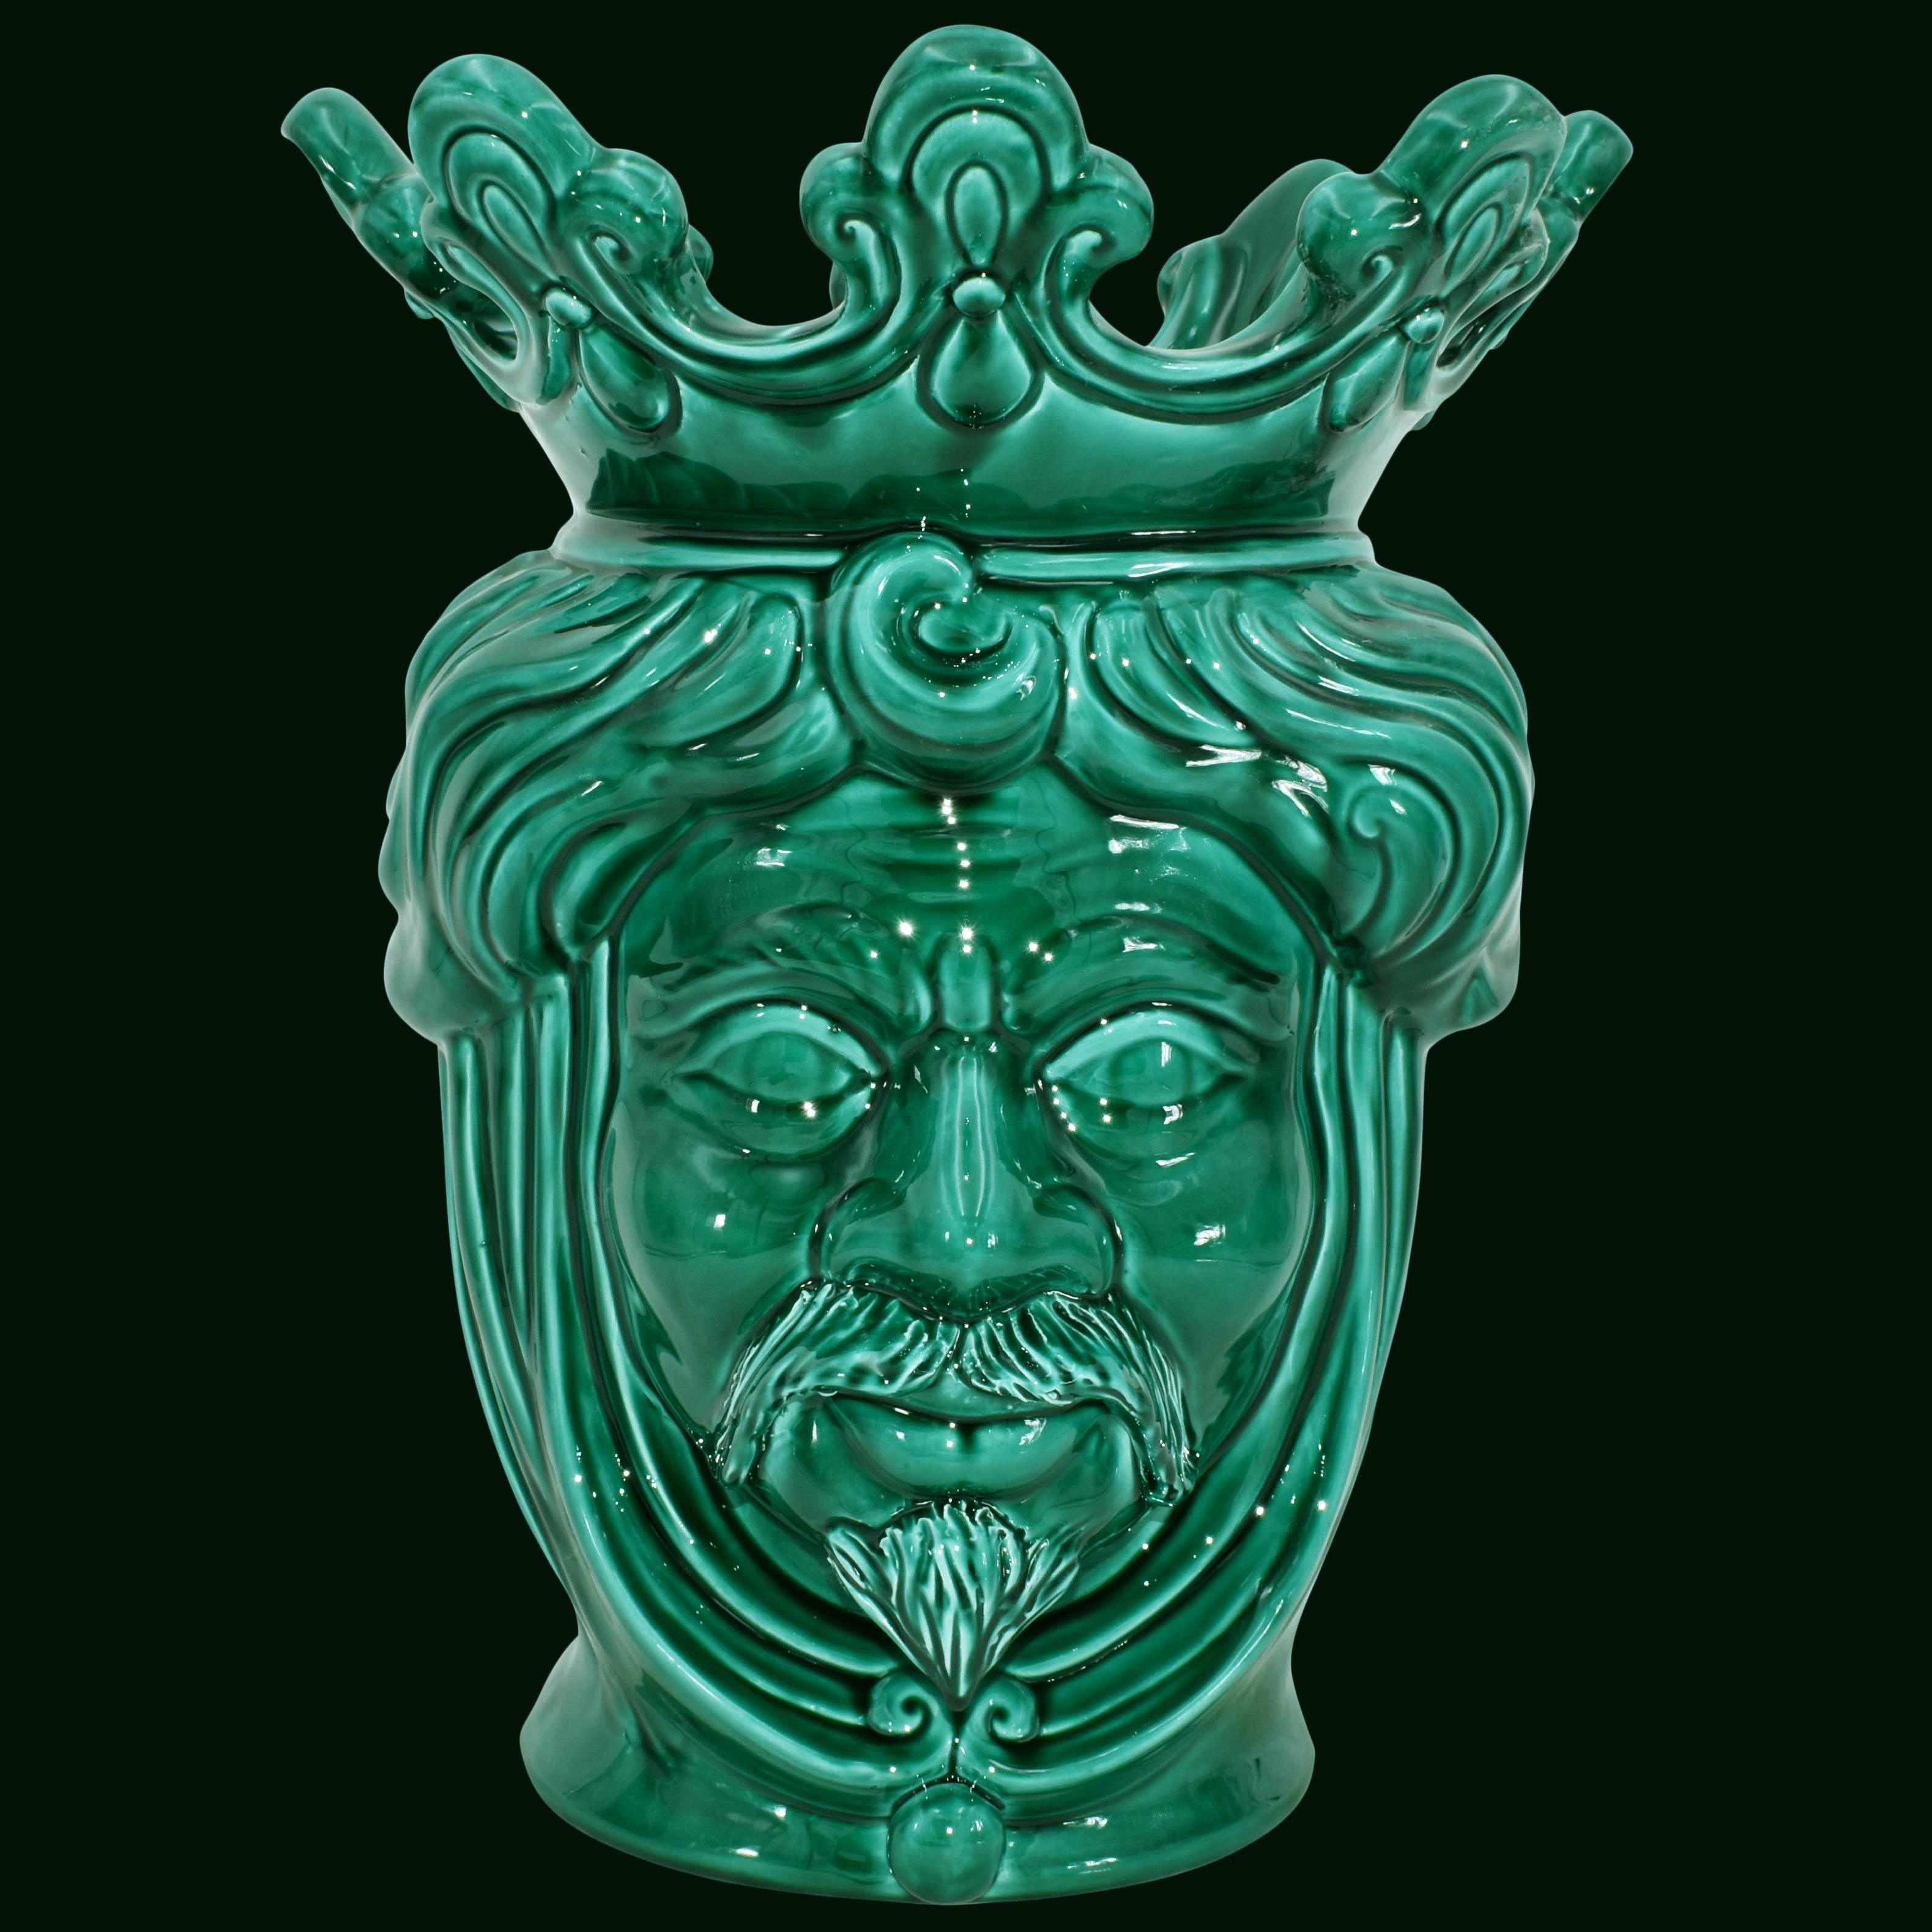 Testa h 40 liscia verde smeraldo maschio - Ceramiche di Caltagirone Sofia